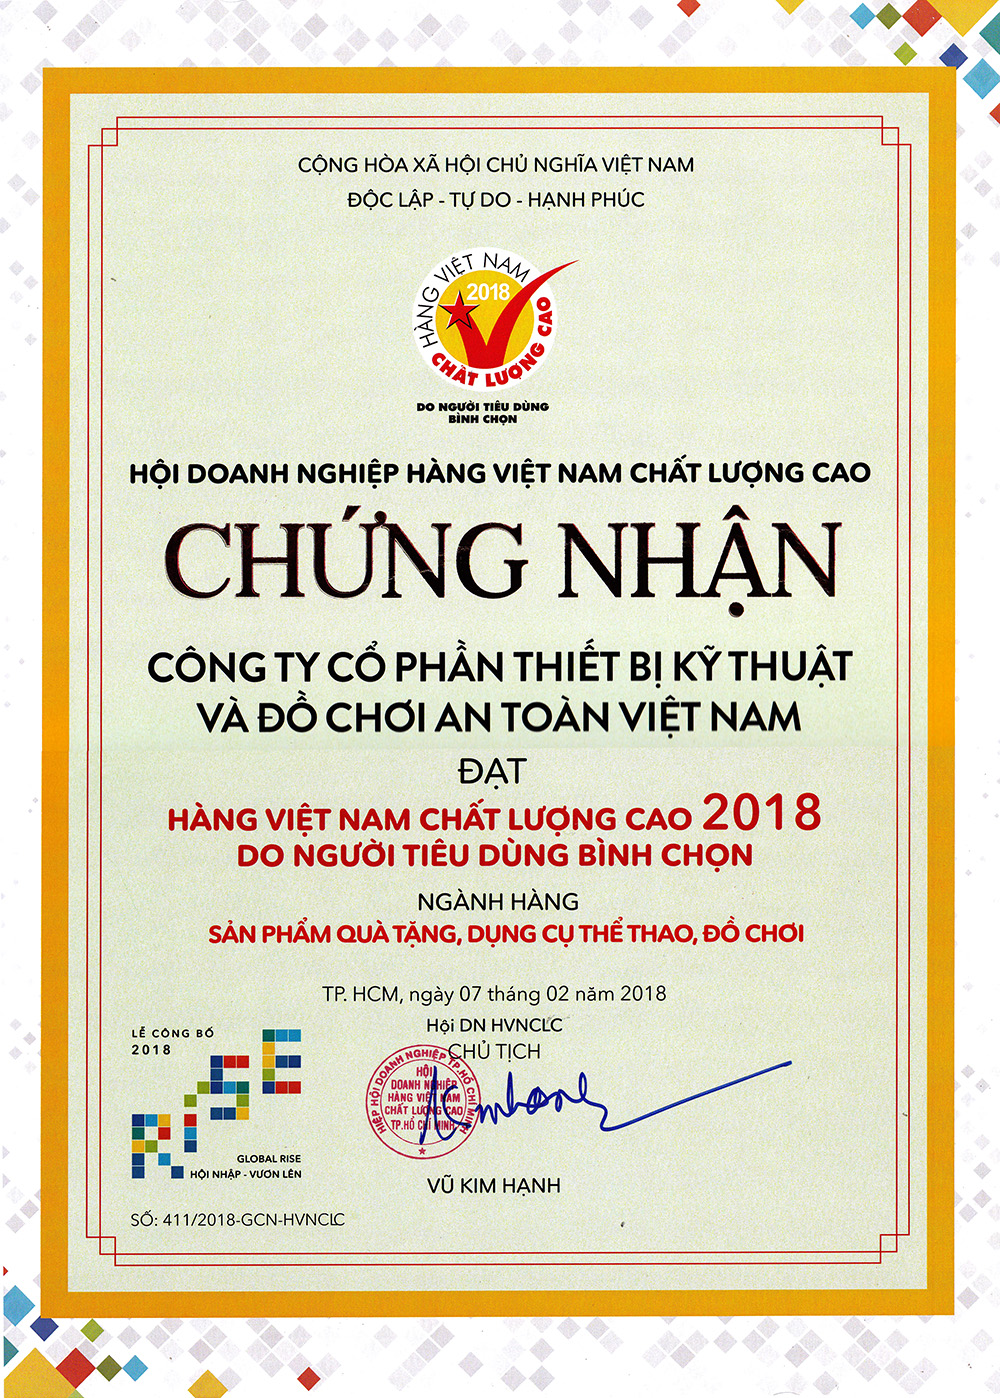 Đồ Chơi An Toàn Việt Nam ANTONA  có 2 năm liên tiếp nhận danh hiệu Hàng Việt Nam Chất Lượng Cao